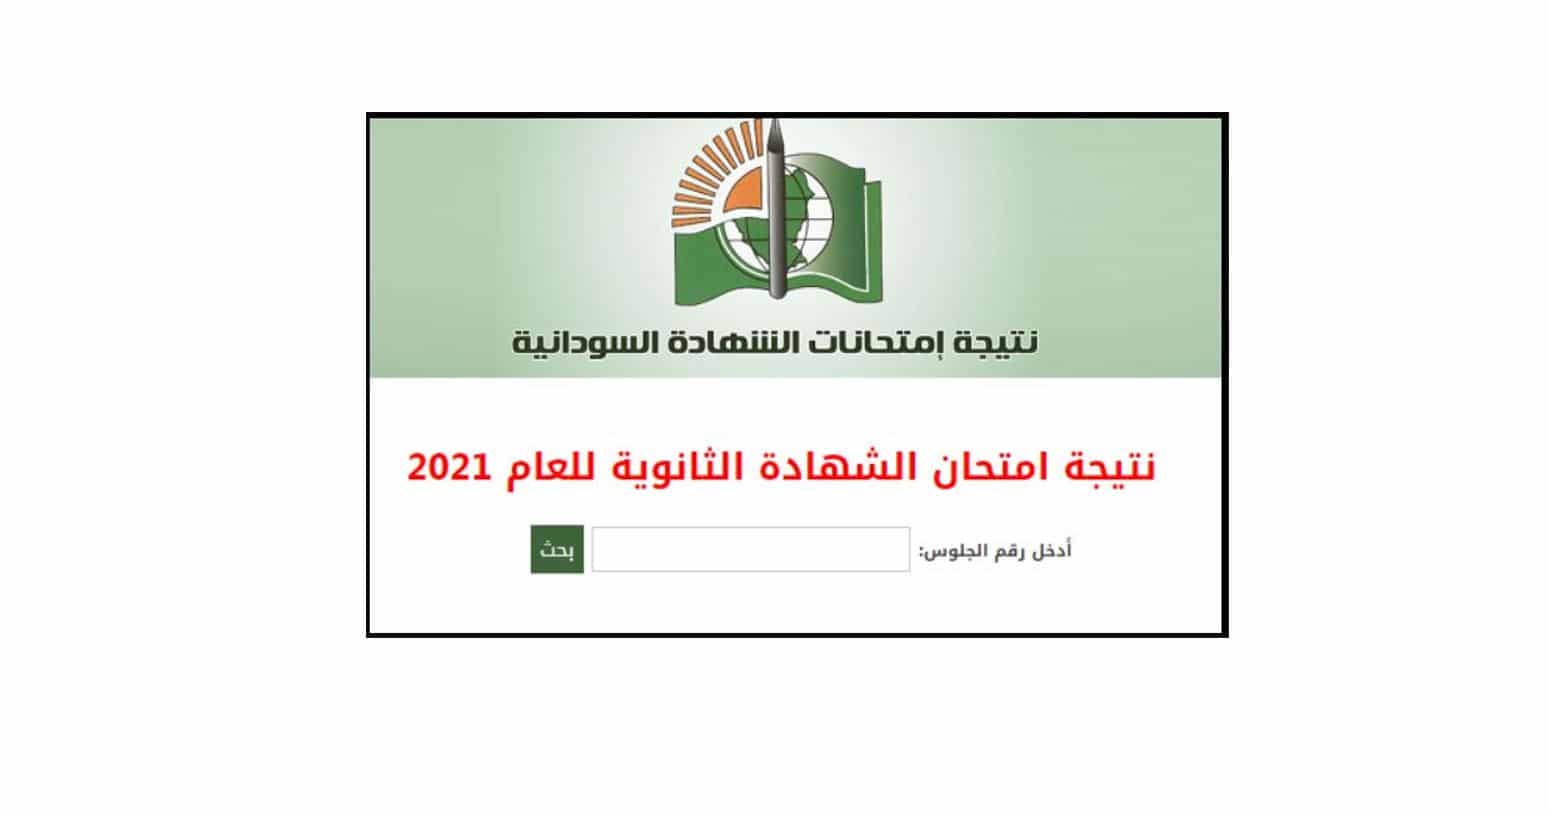 معرفة نتيجة الشهادة السودانية بإدخال رقم الجلوس 2022